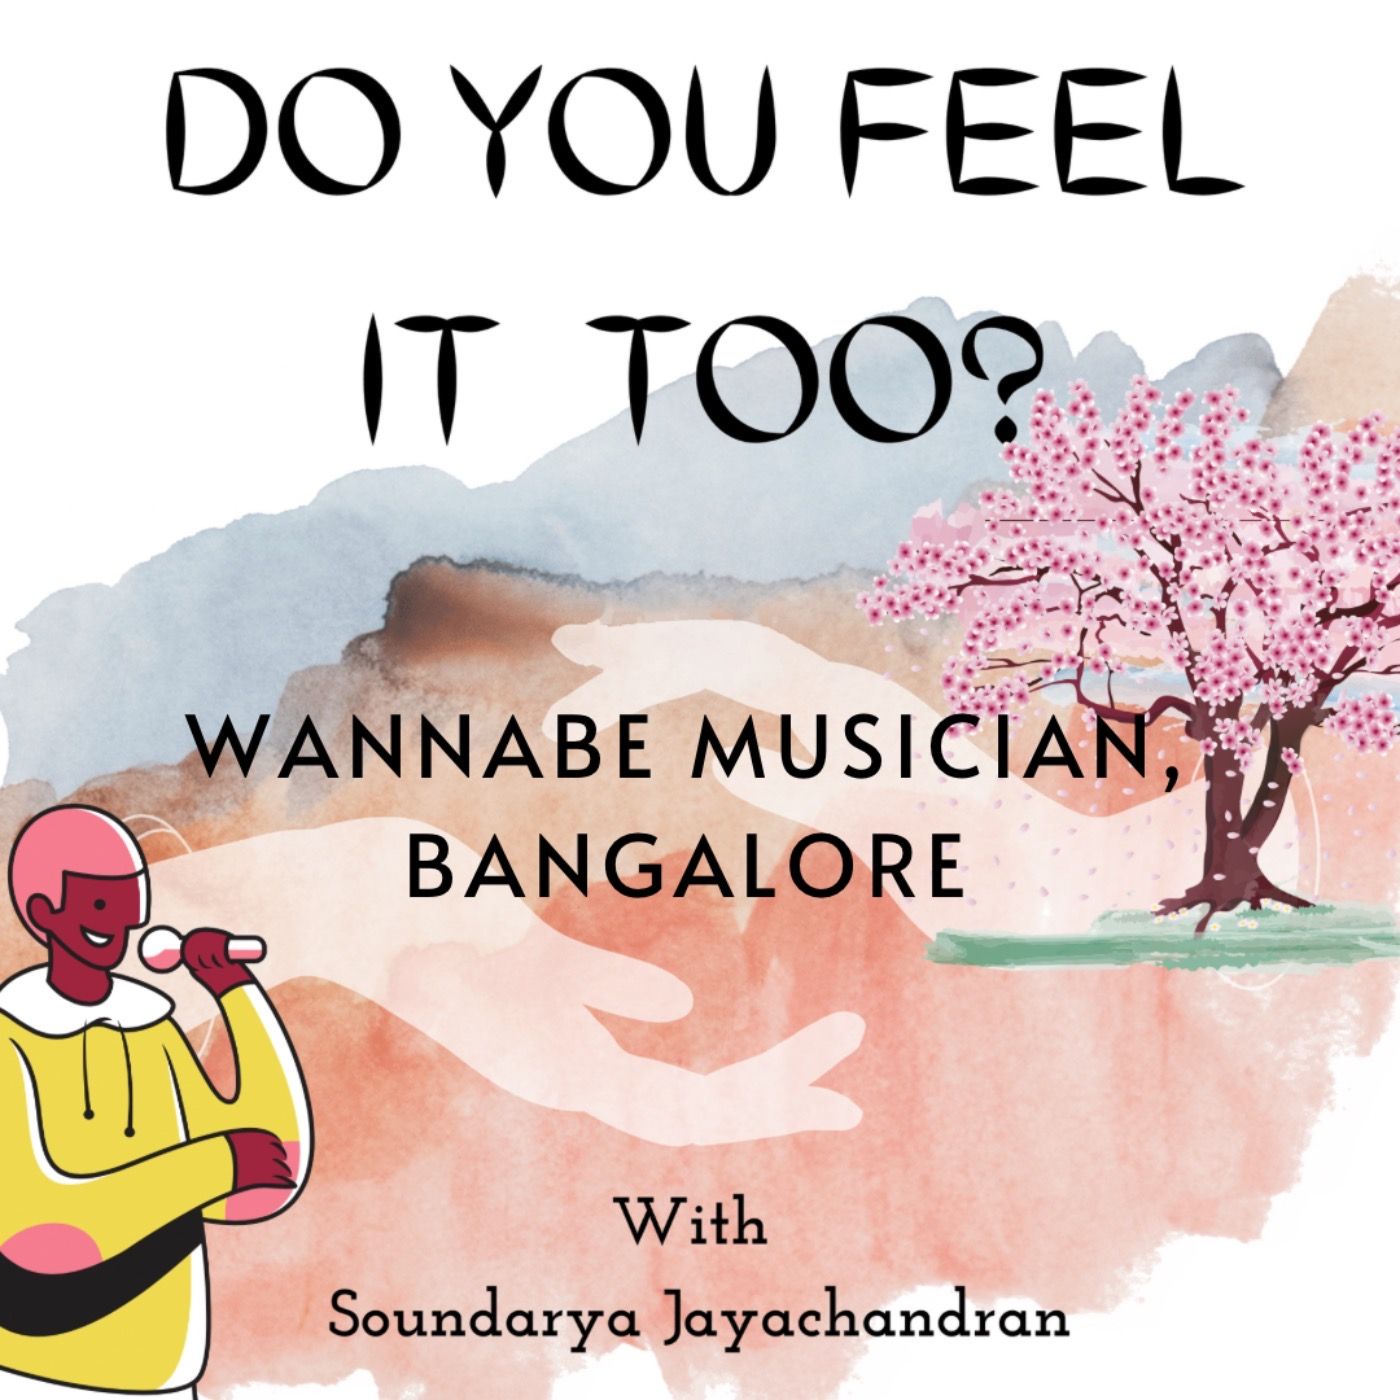 Wannabe Musician, Bangalore